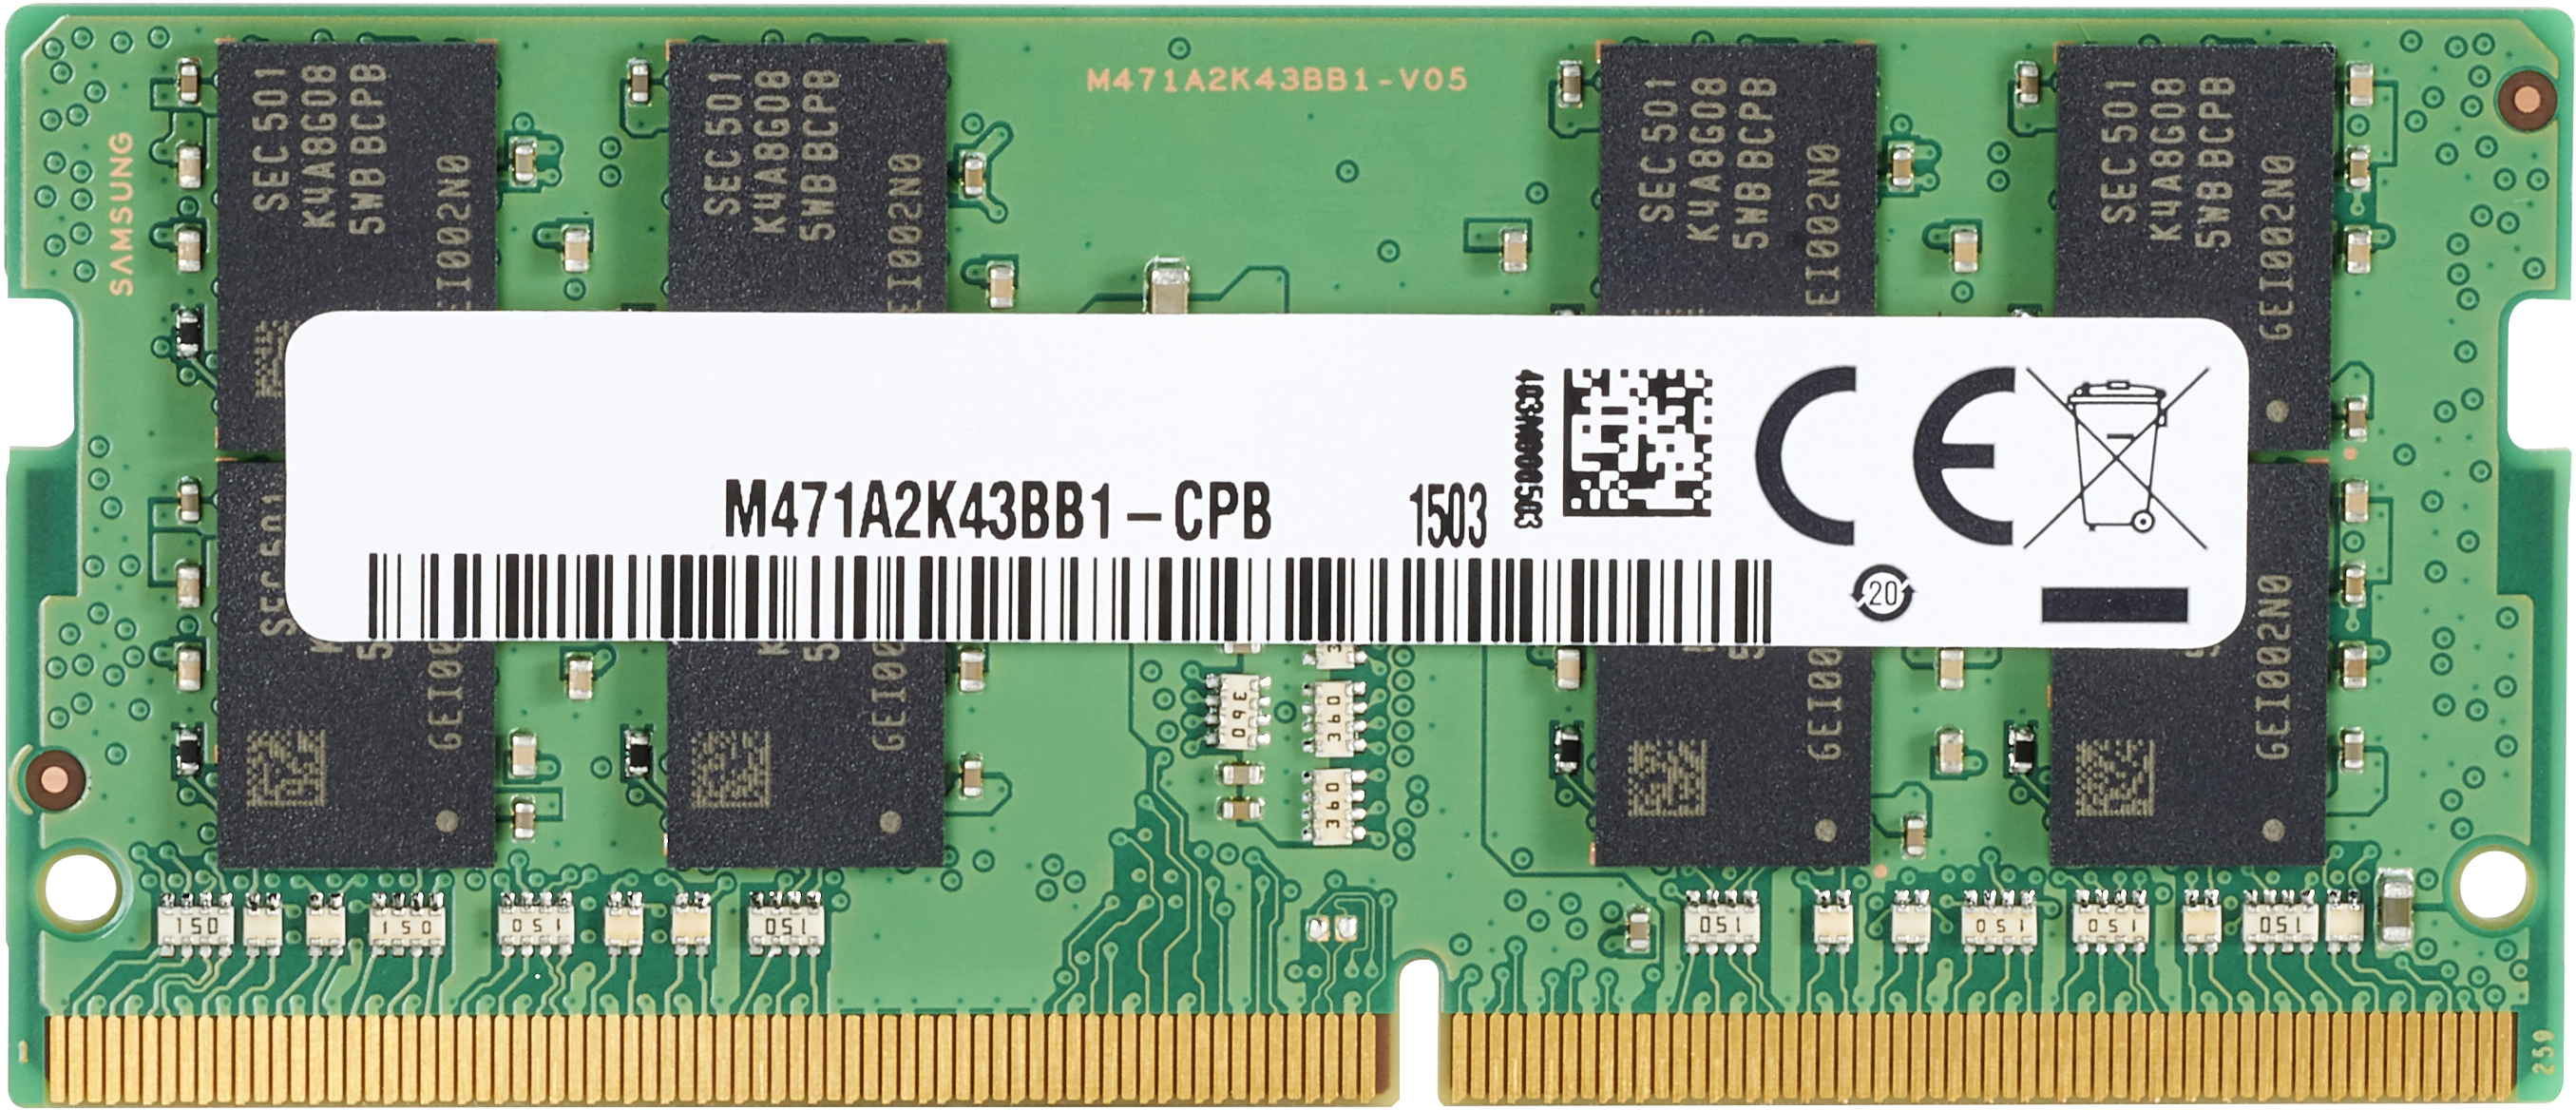 Barrette mémoire RAM HP 8 Go 3 200MHz DDR4